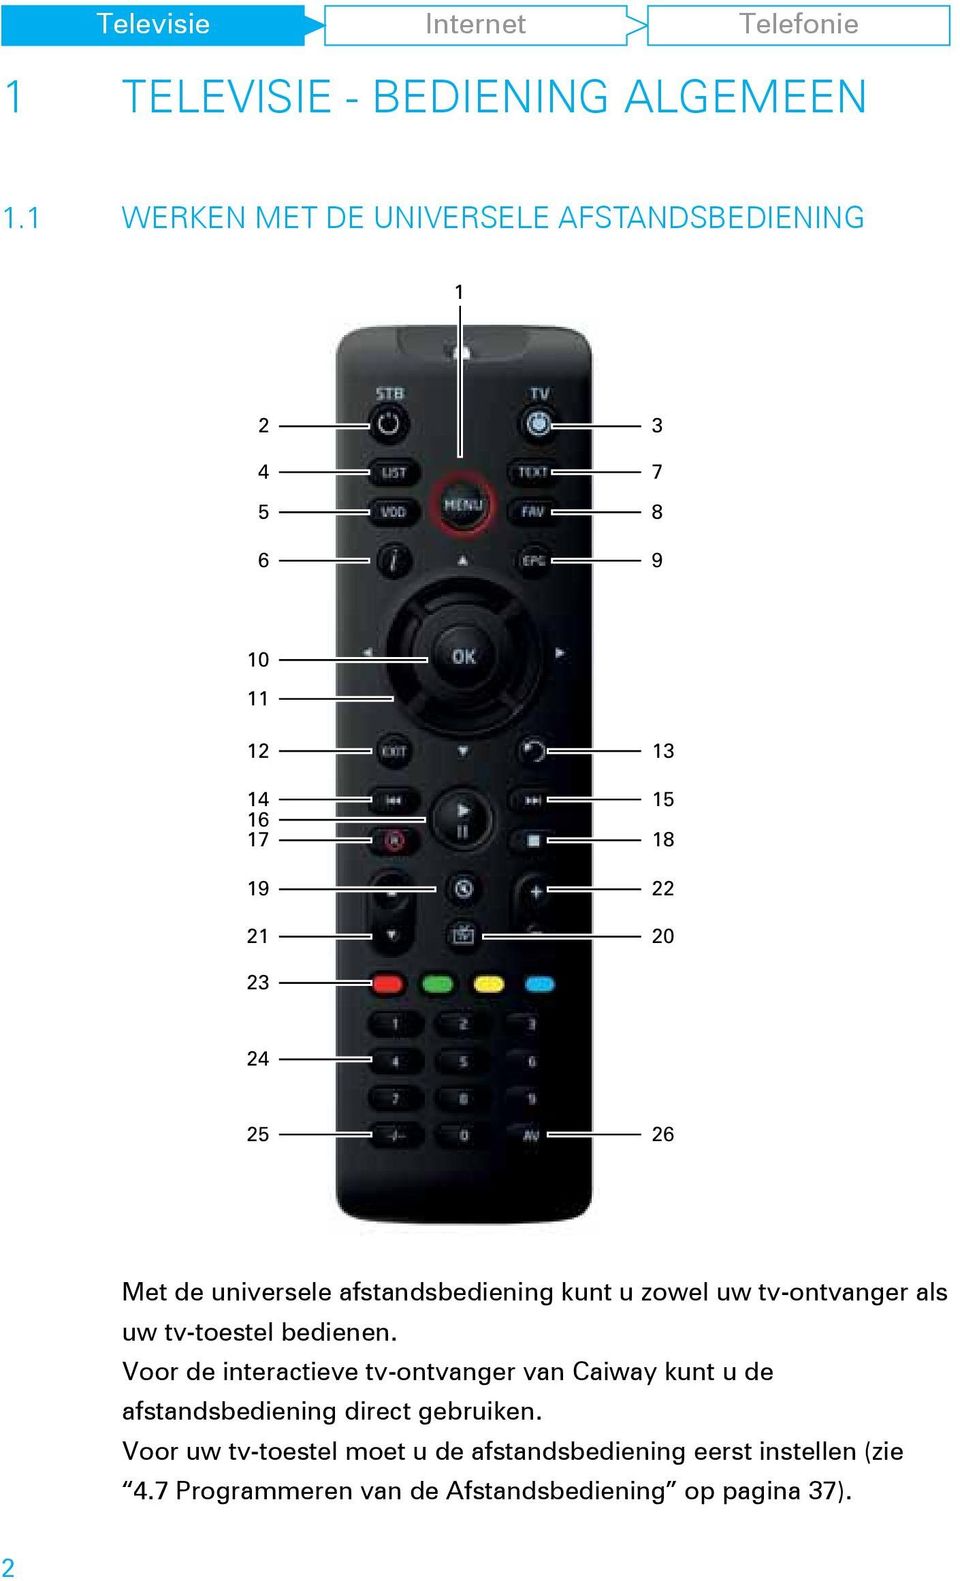 Met de universele afstandsbediening kunt u zowel uw tv-ontvanger als uw tv-toestel bedienen.